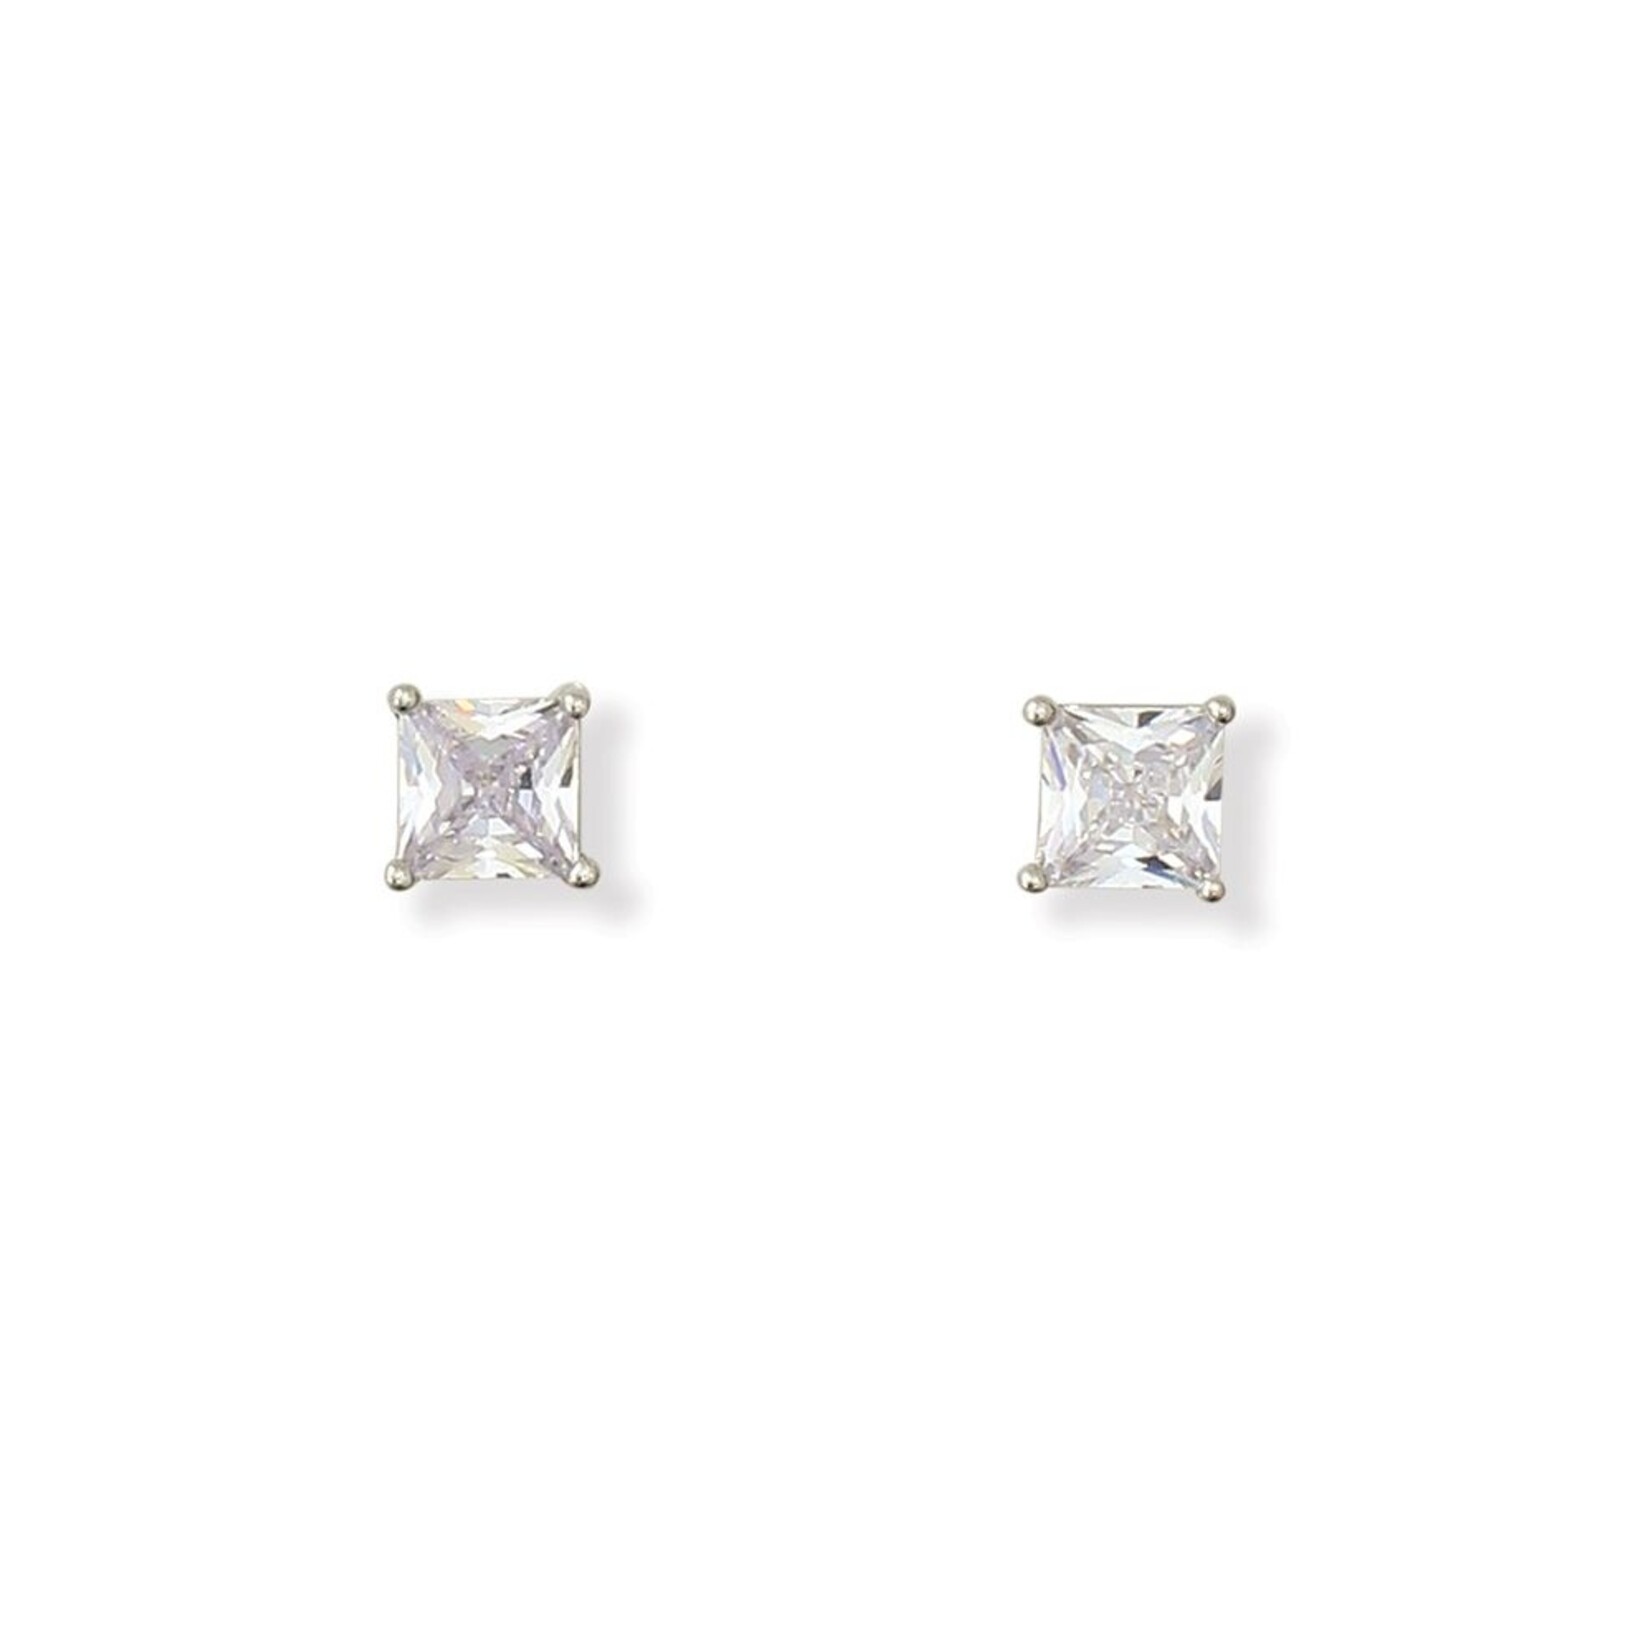 Periwinkle Periwinkle - Earrings - CZ in Silver Setting